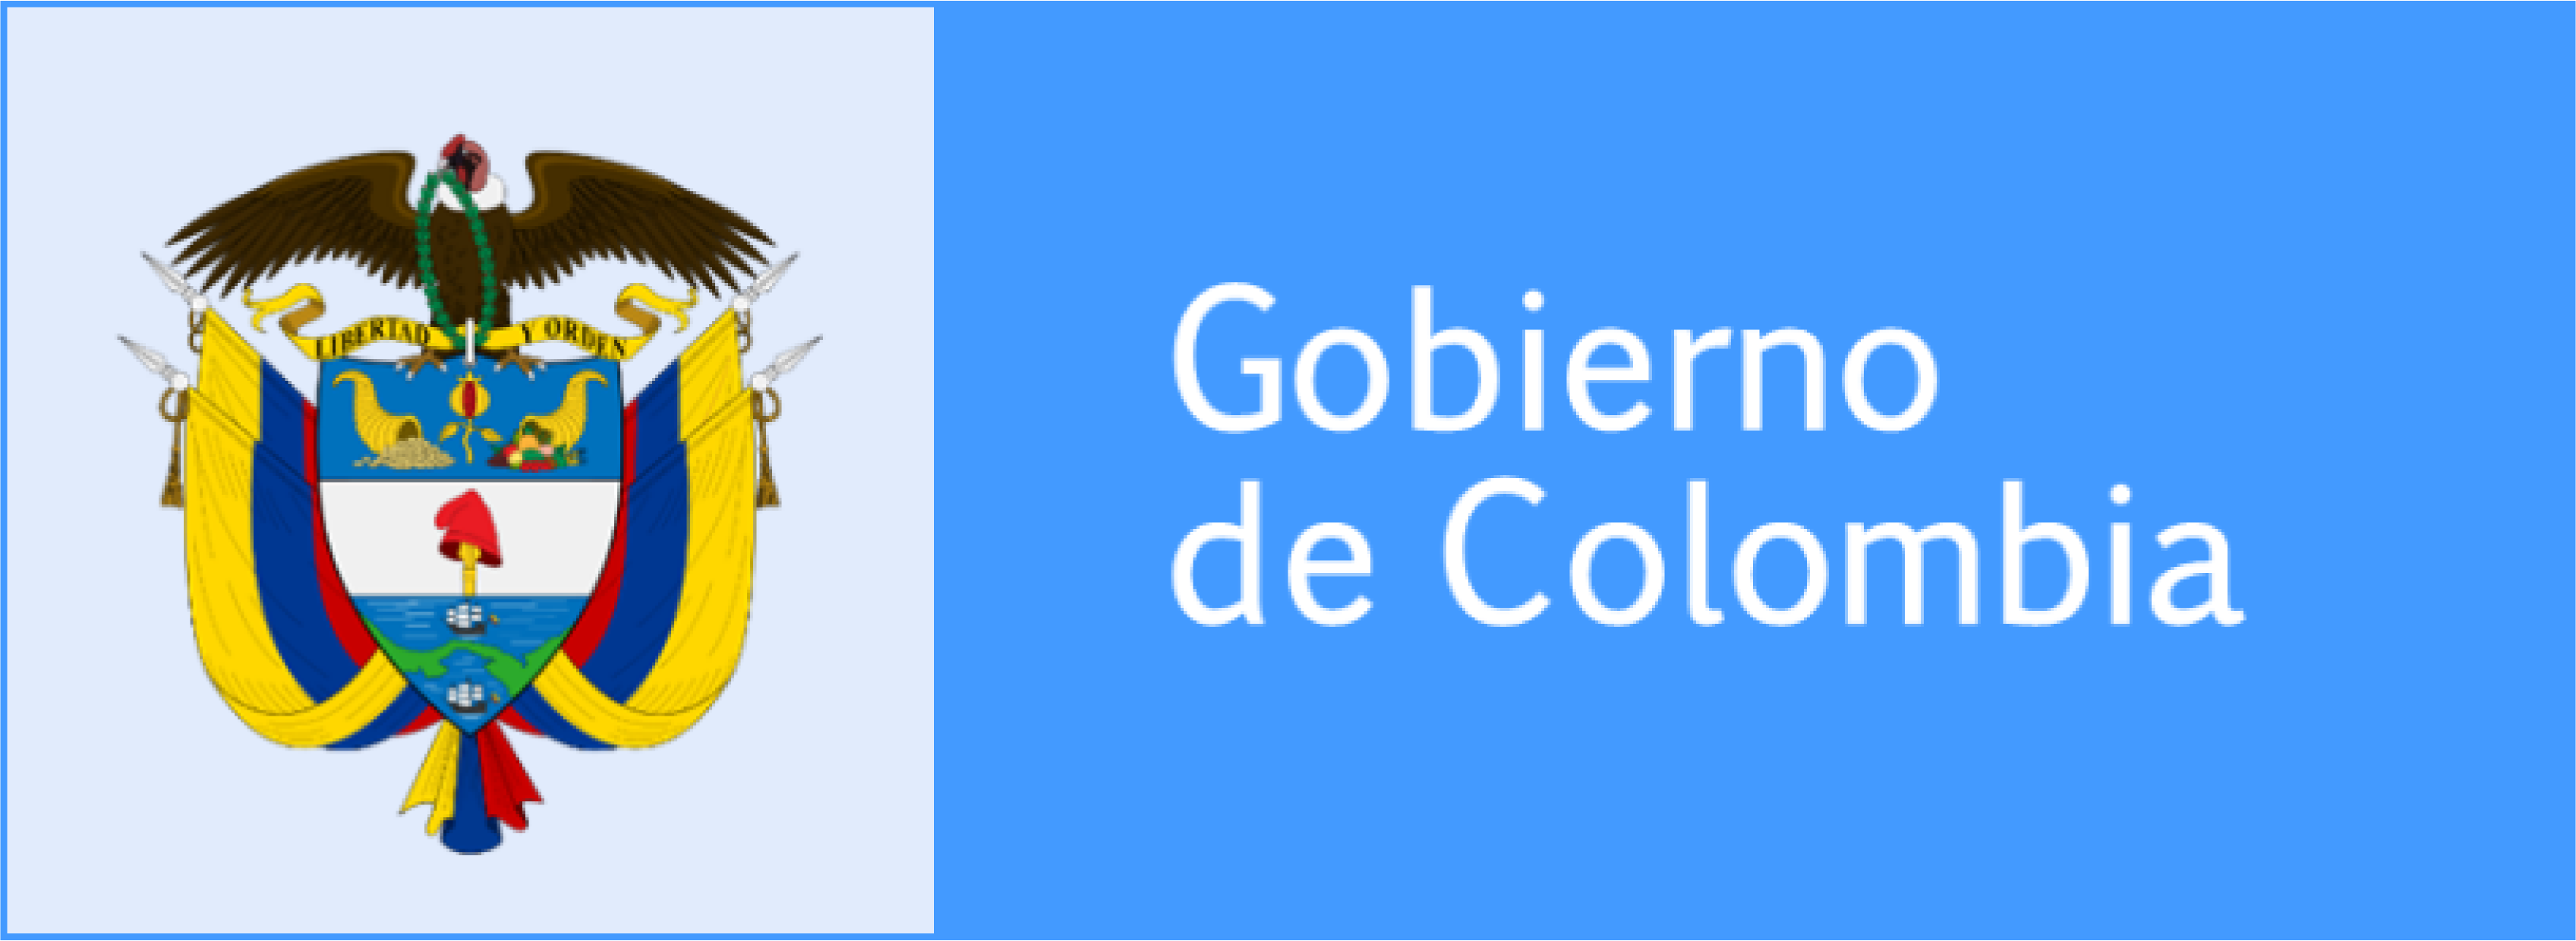 LOGO GOBIERNO DE COLOMBIA